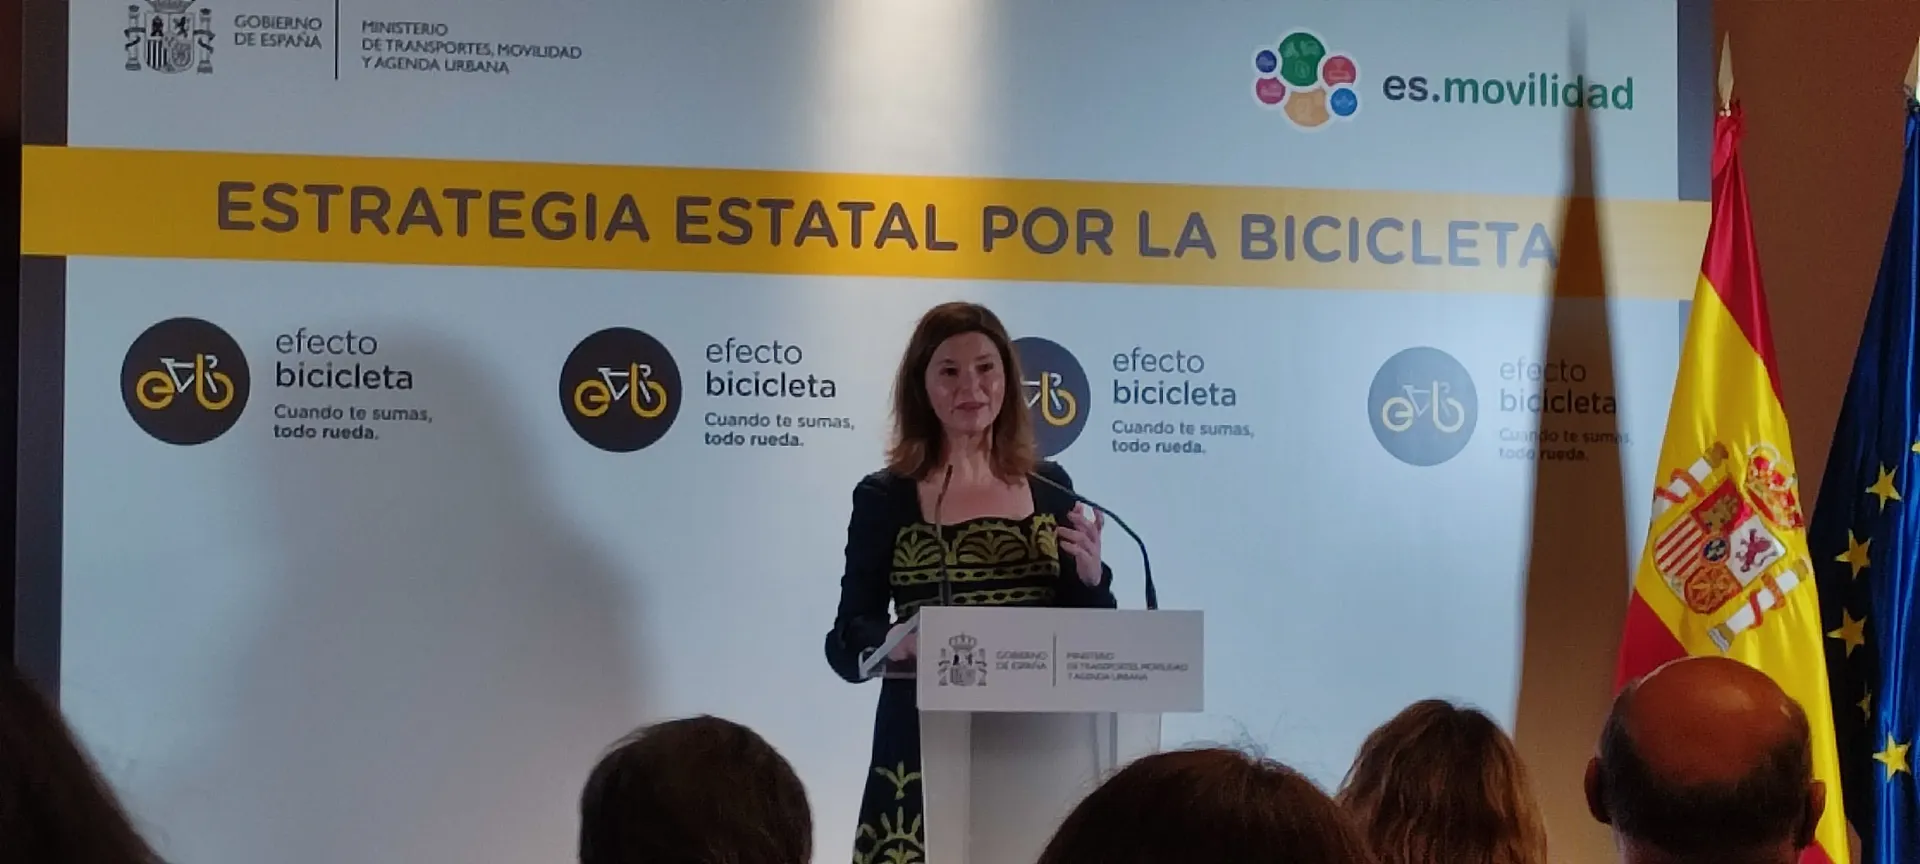 María José Rallo: "Es esencial informar para sensibilizar"